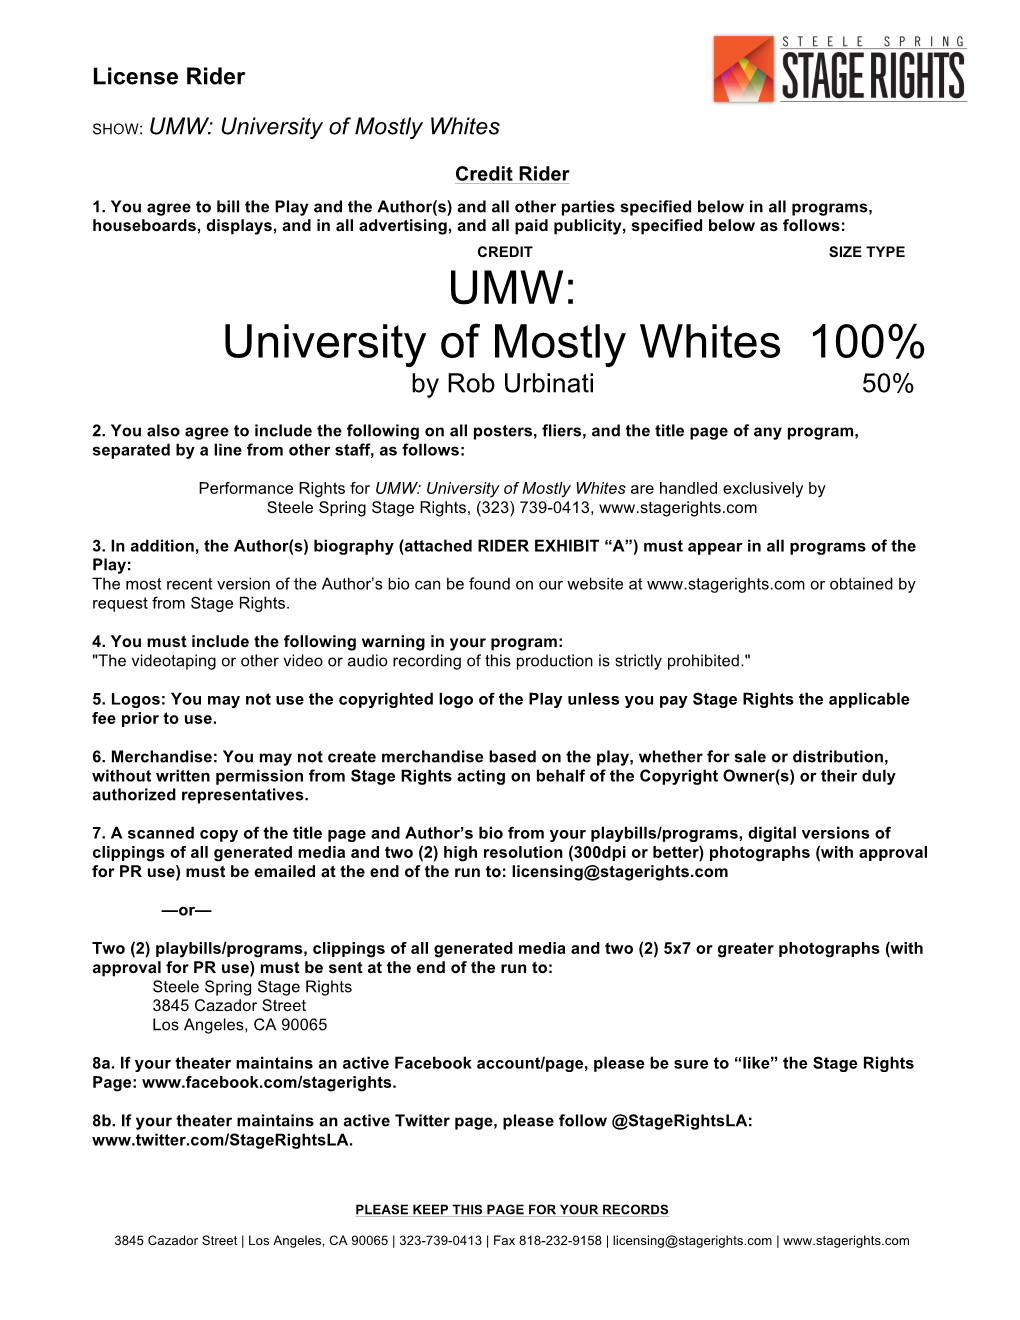 UMW: University of Mostly Whites